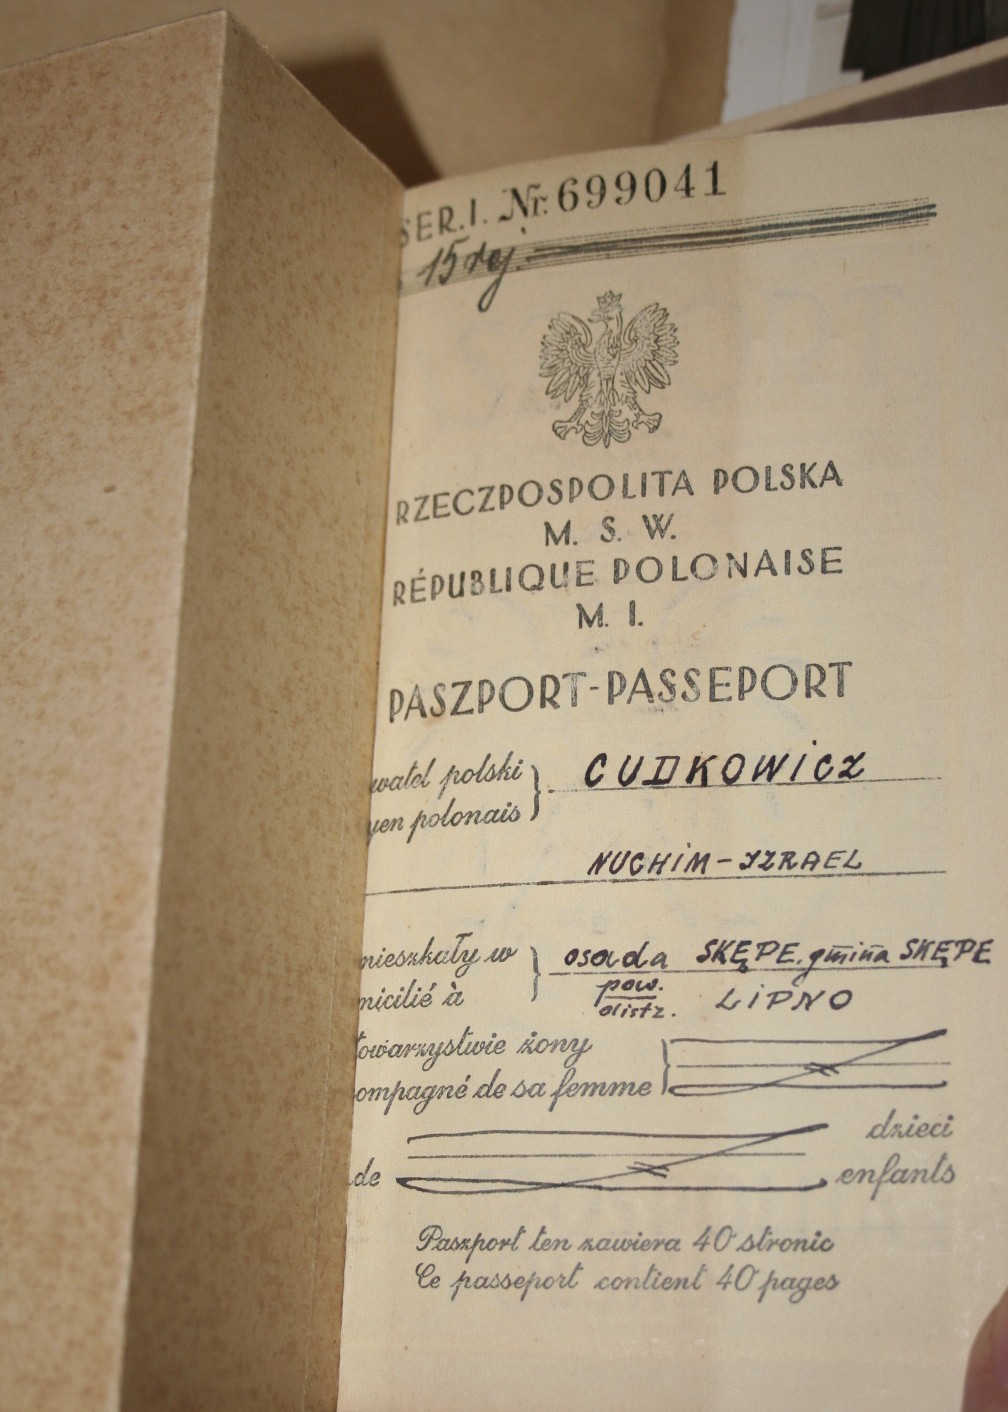 Passport-2